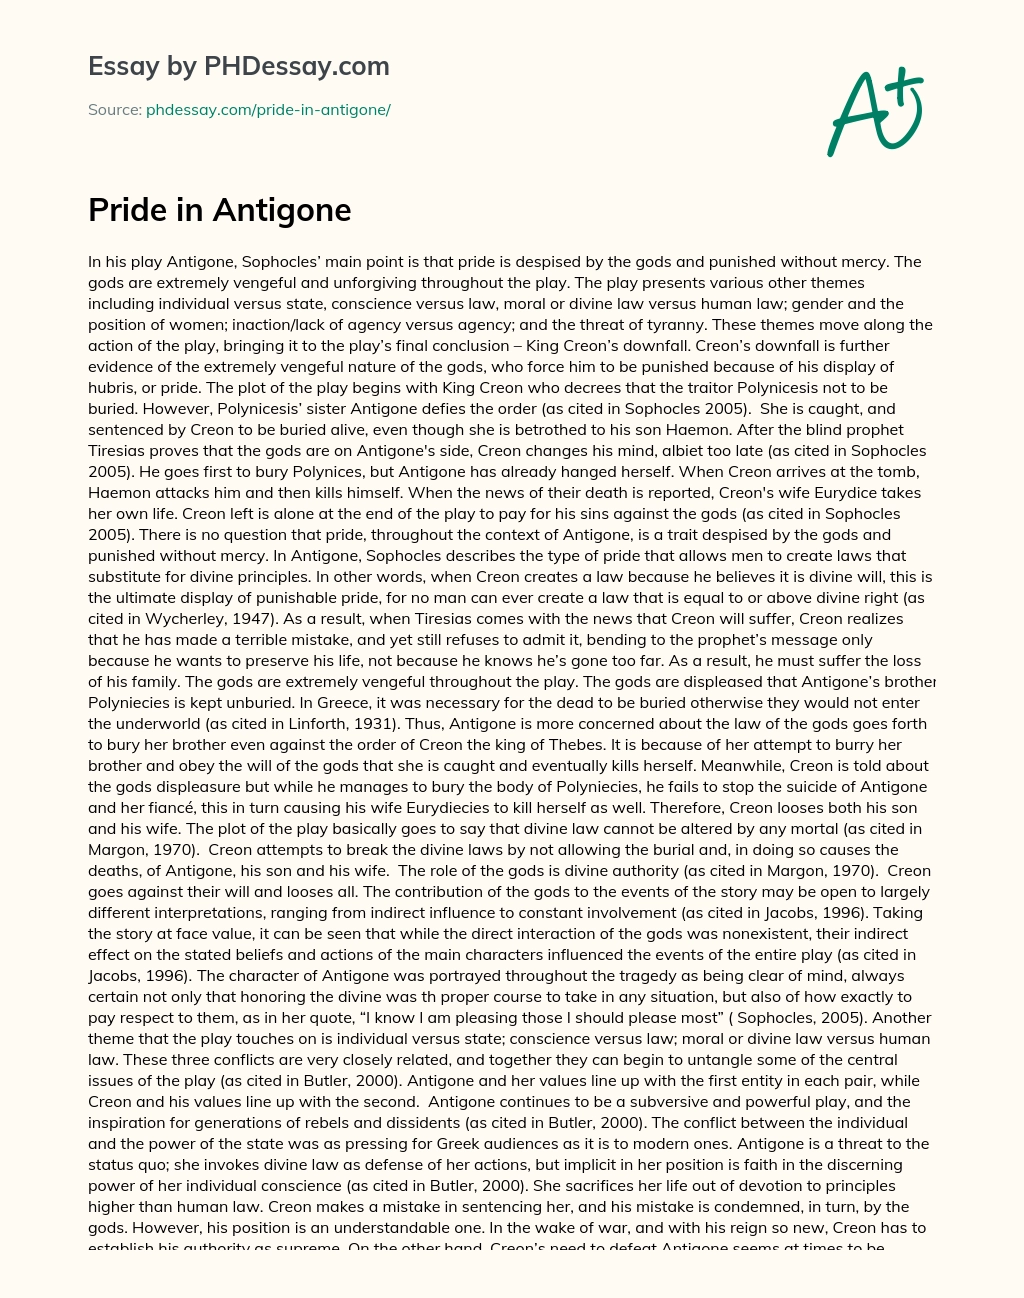 Pride in Antigone essay